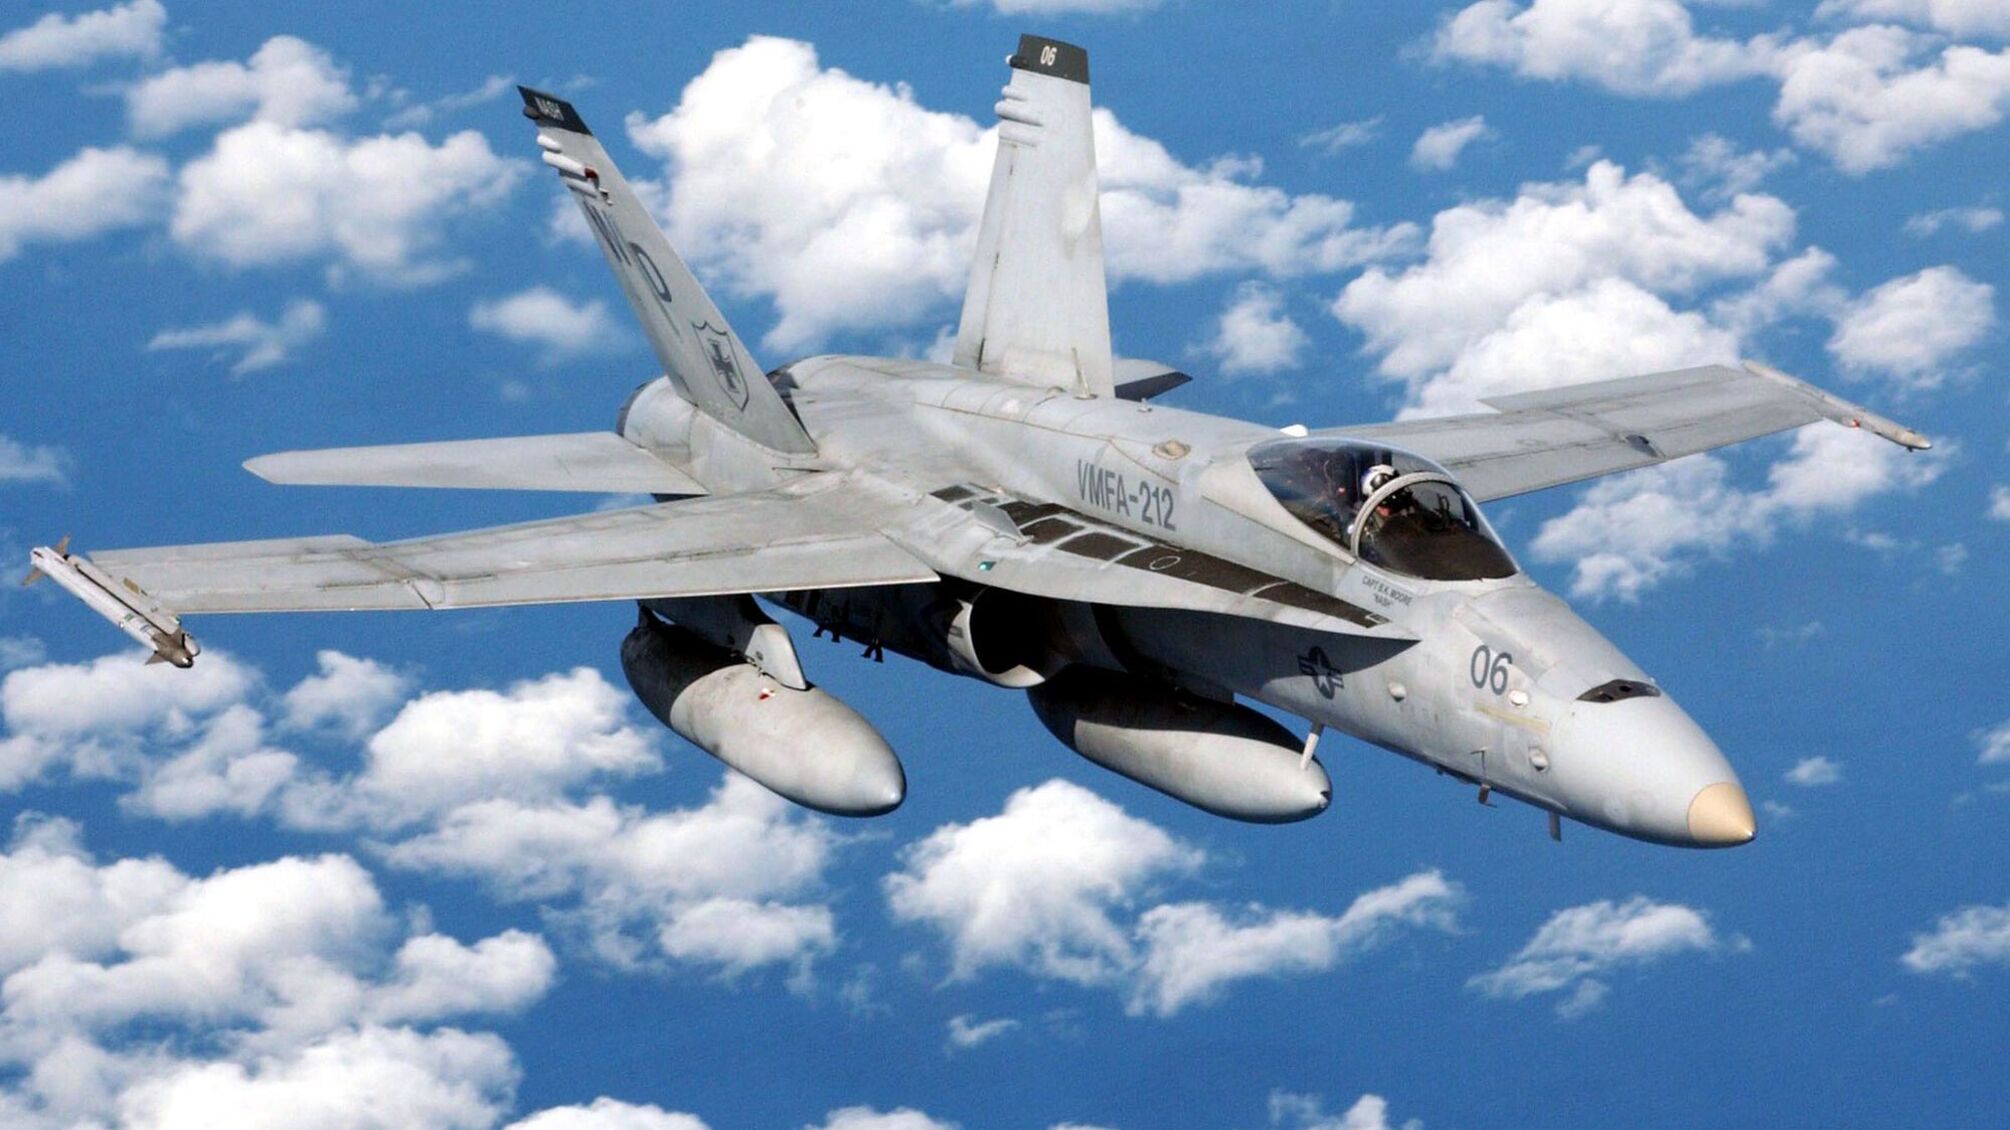 Австралия может передать Украине списанные истребители F/A-18 Hornet, – СМИ